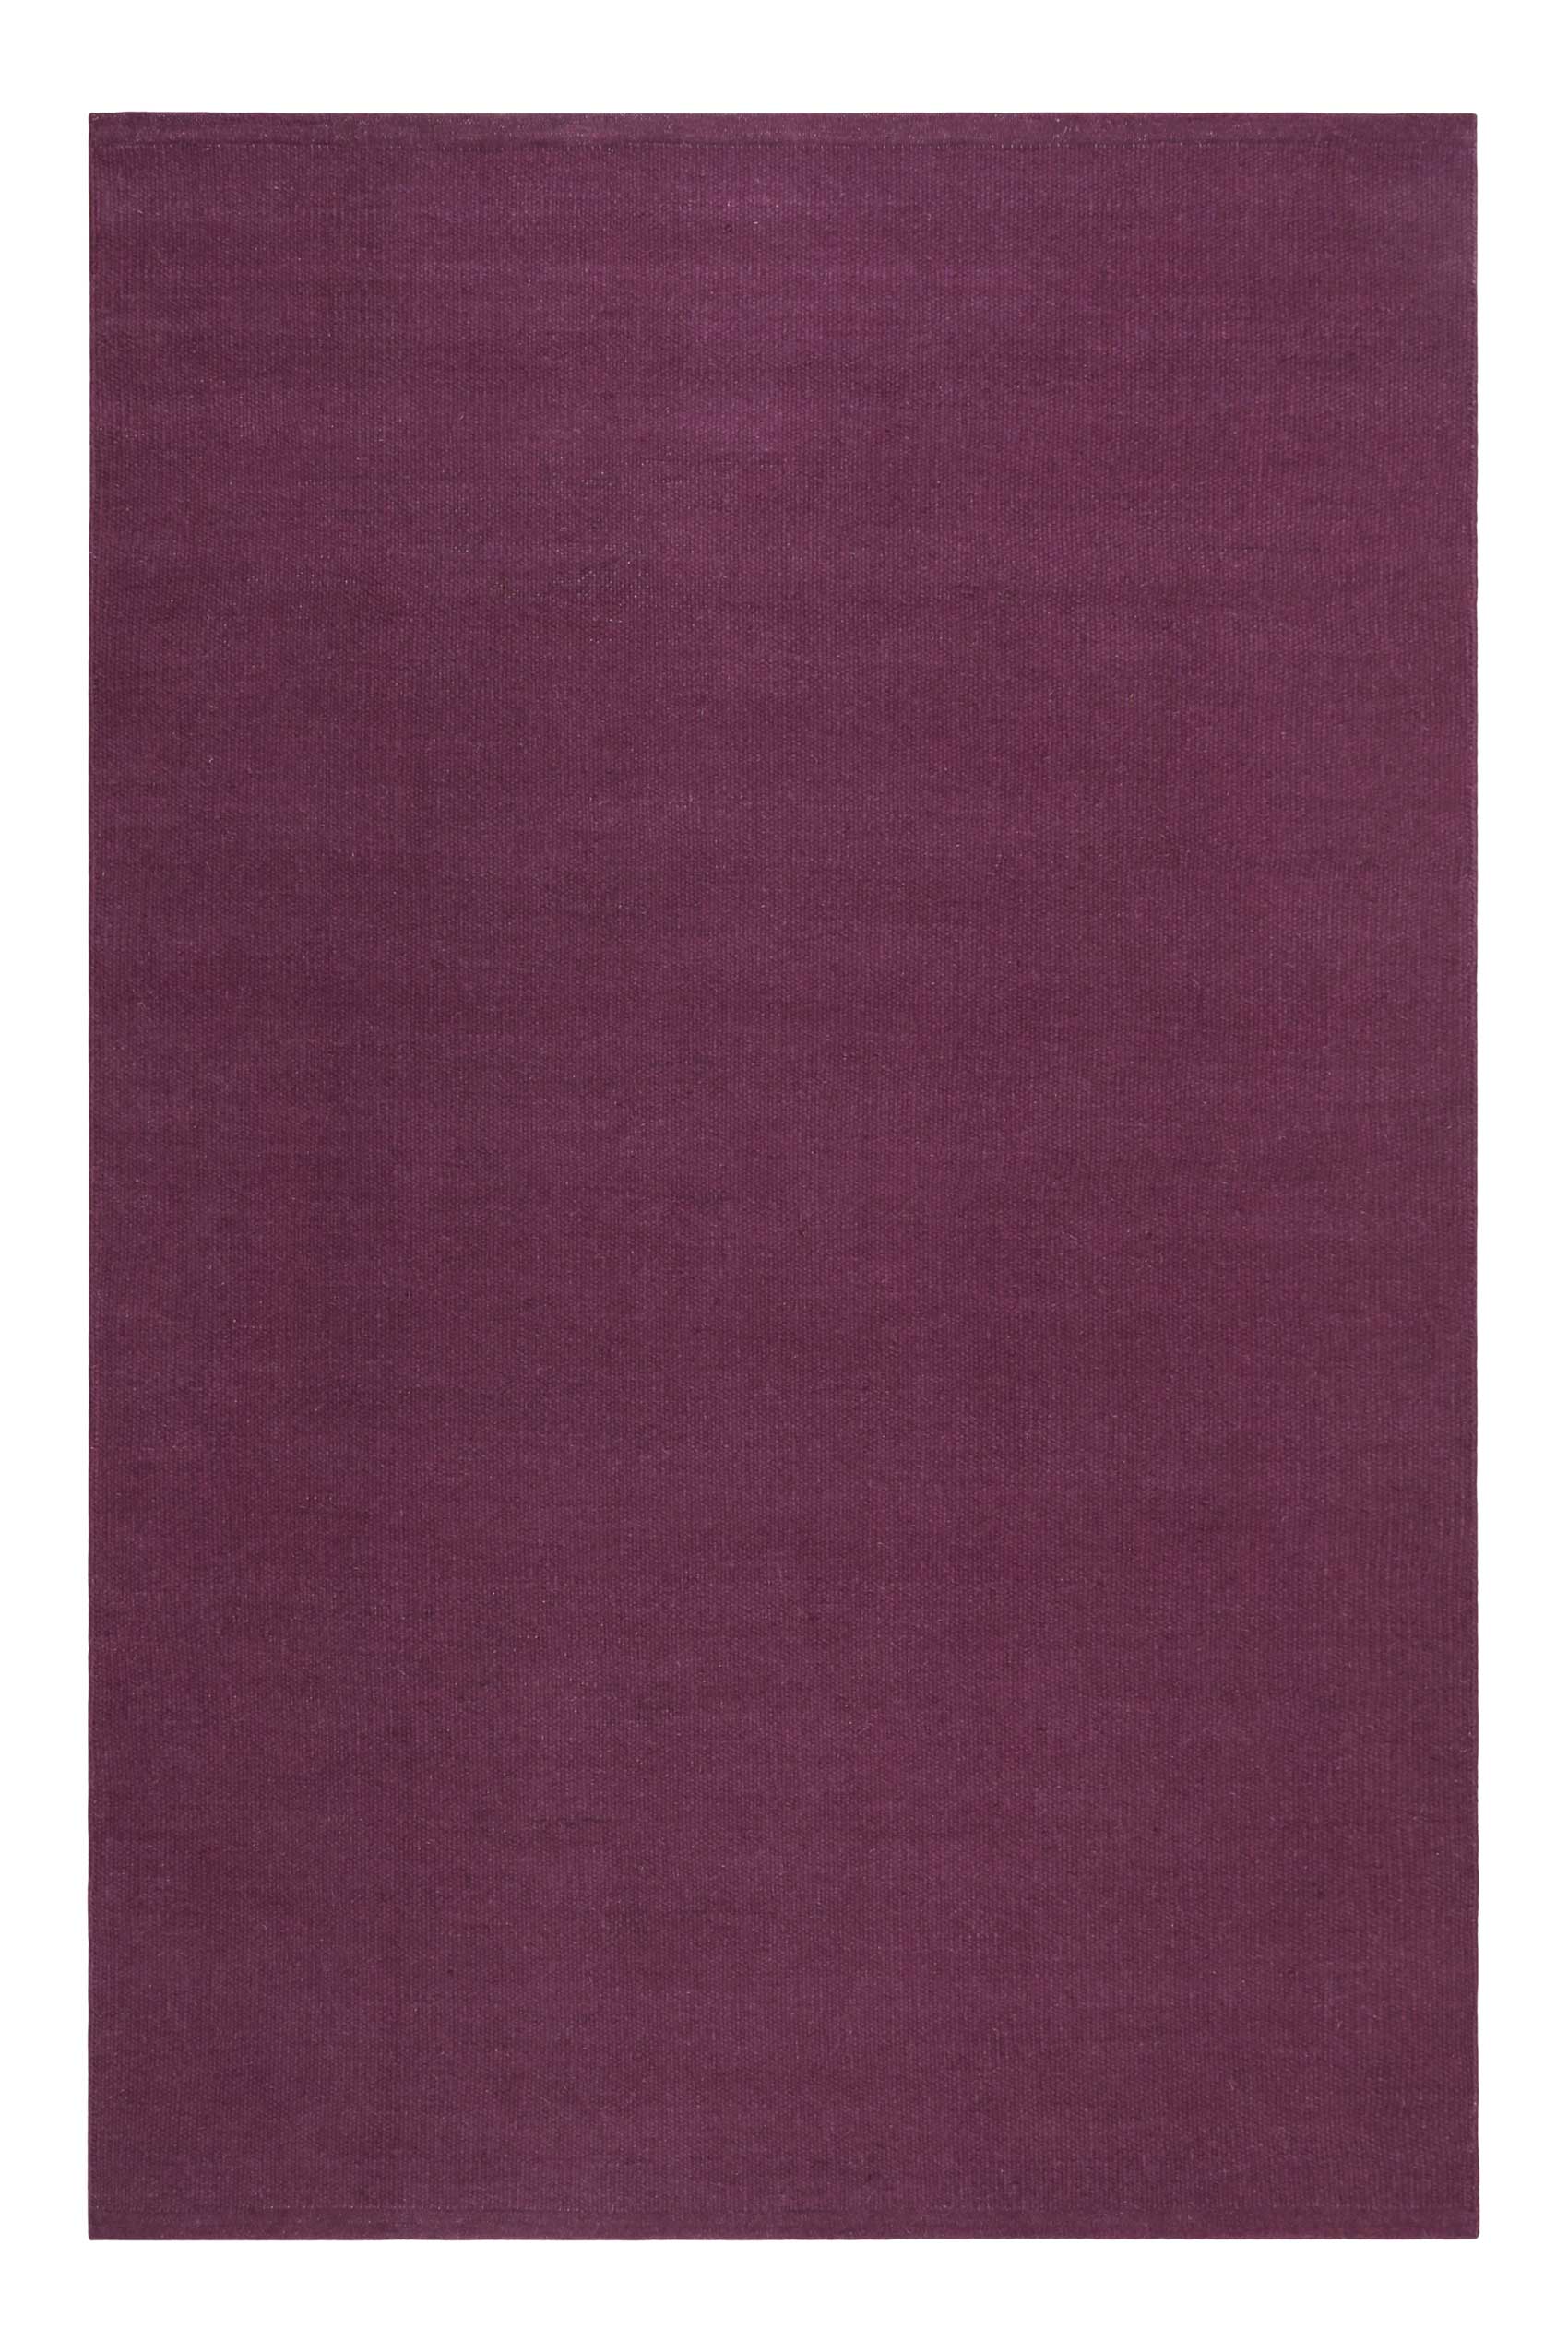 Tapis tissé main pure laine vierge violet lilas 160x230